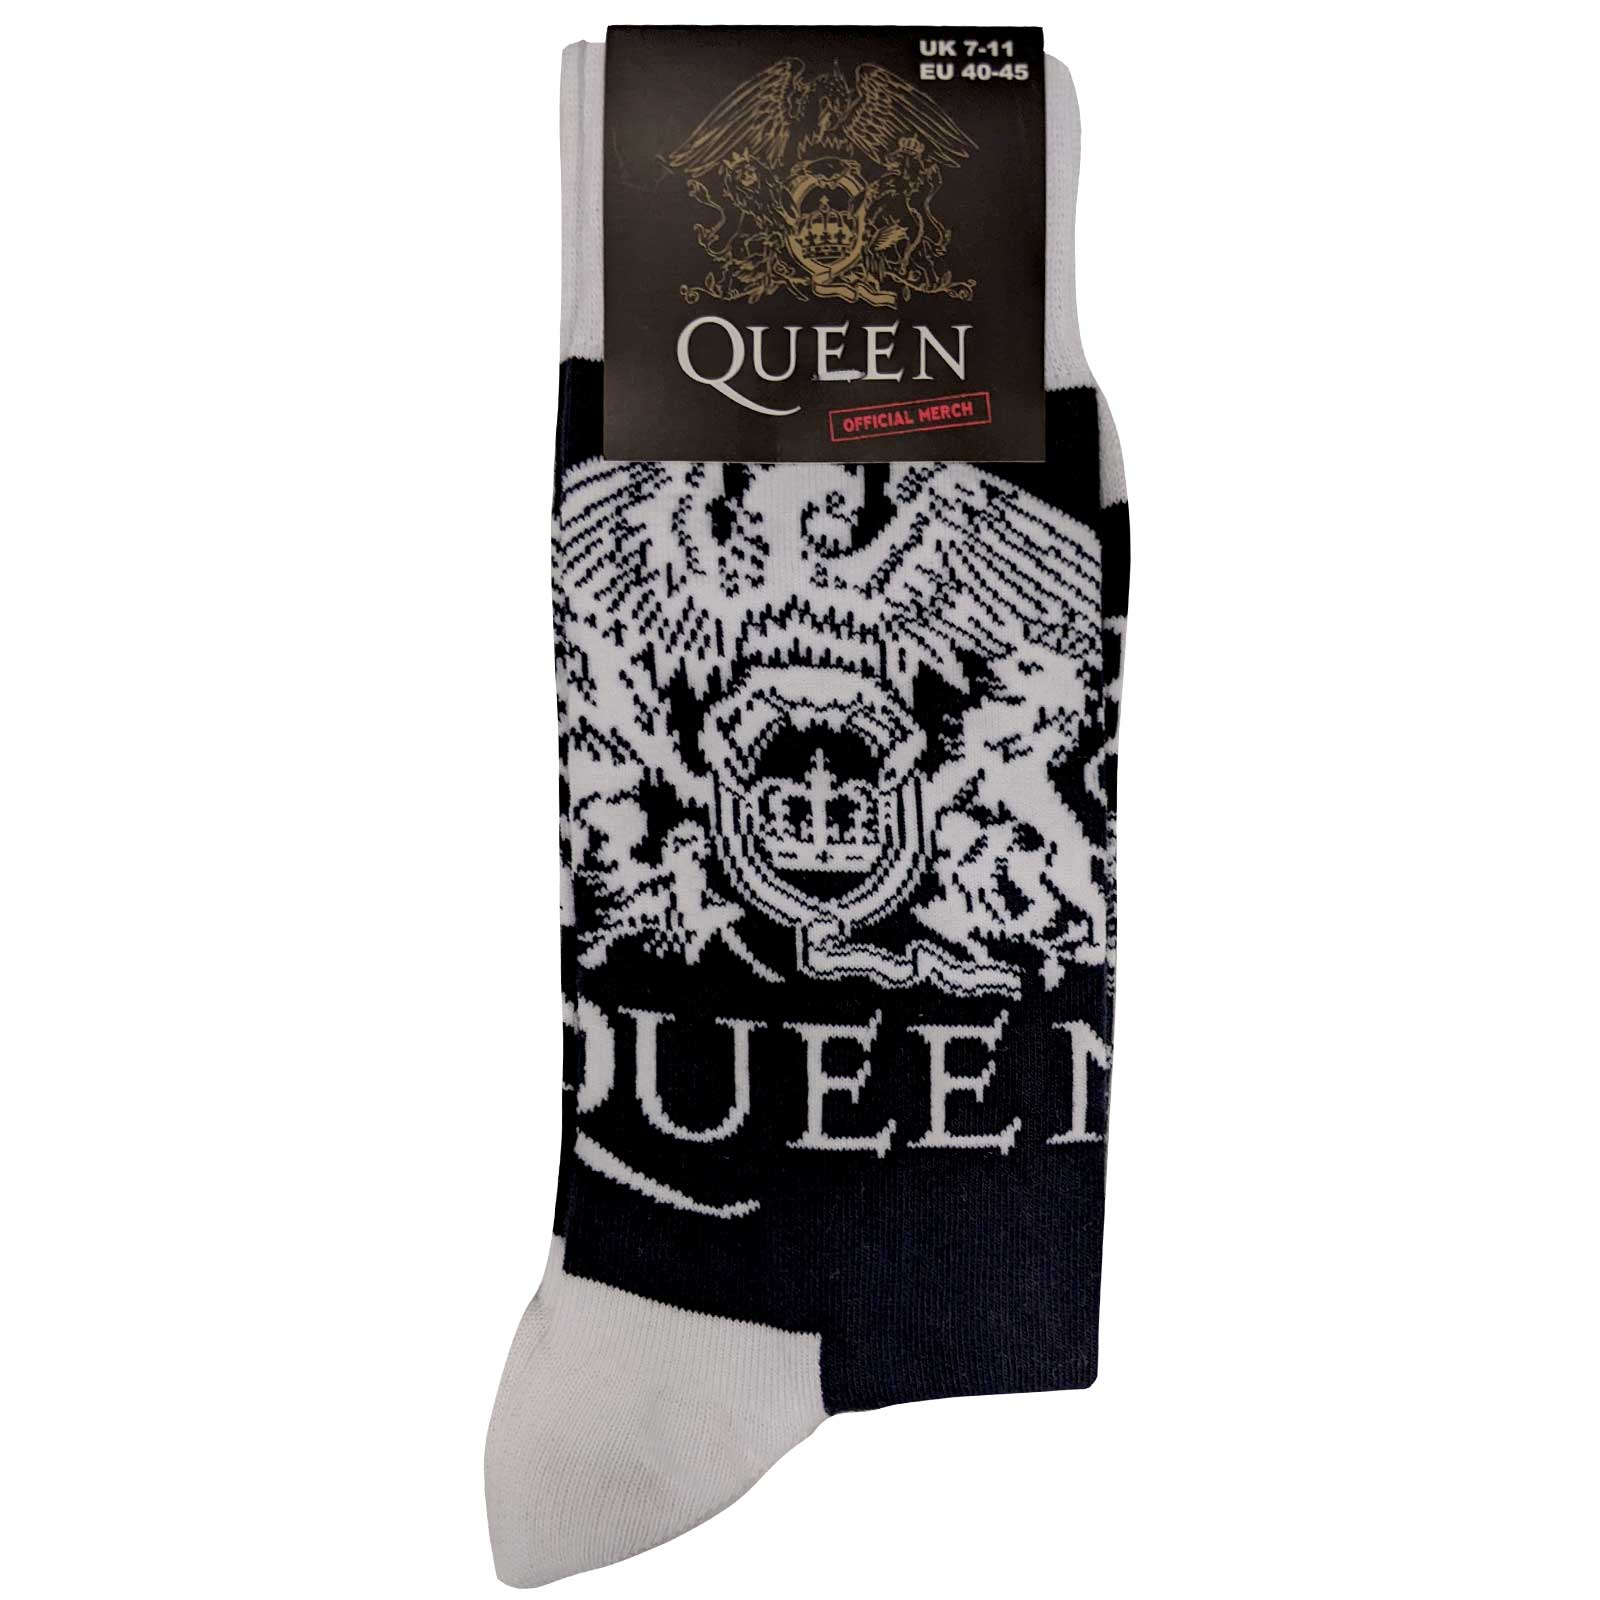 Queen Chaussettes unisexes – Écusson blanc (taille UK 7-11)